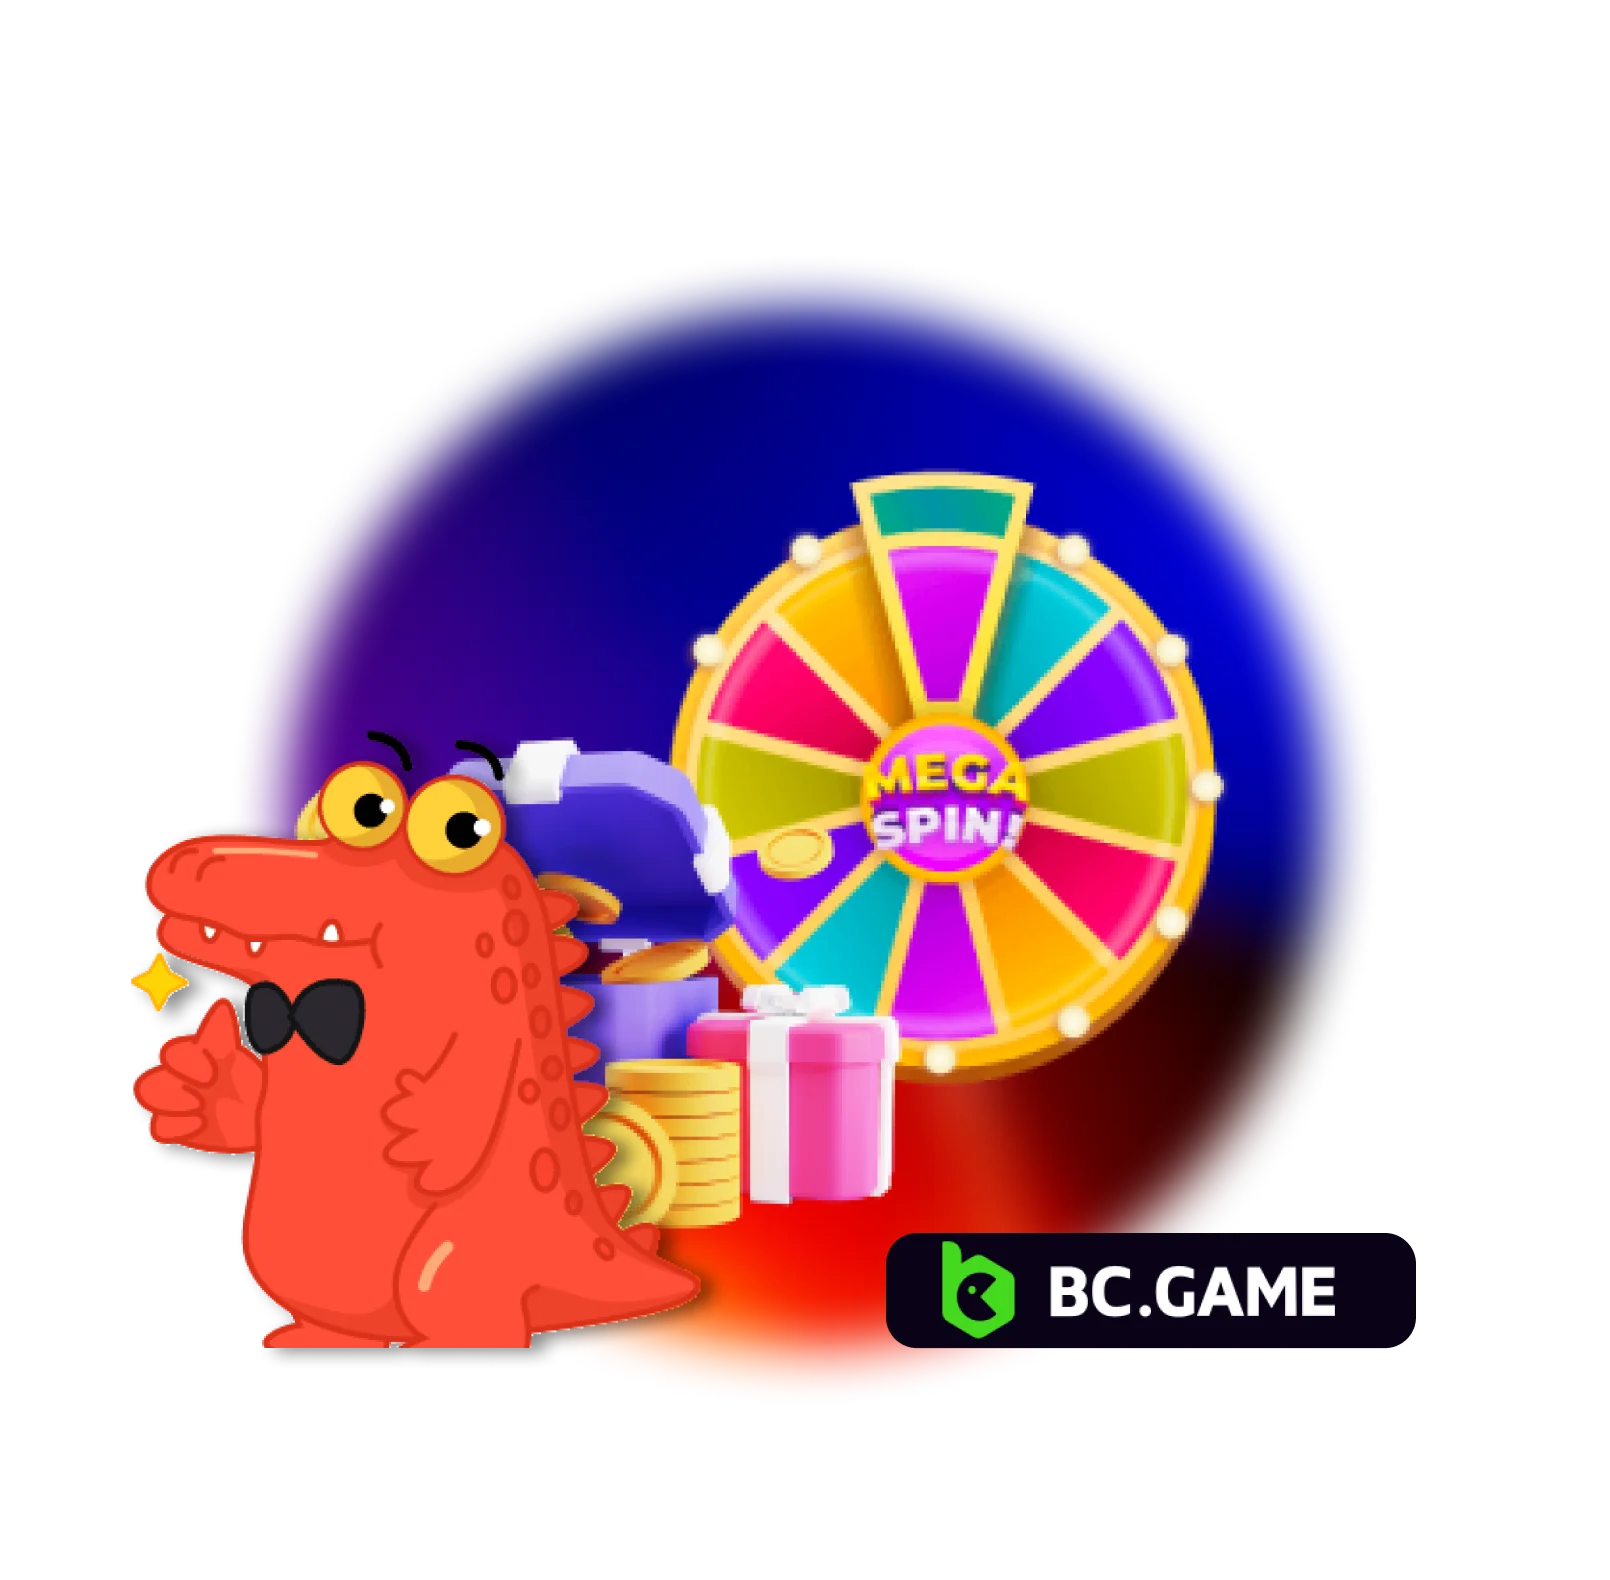 Luck spin bonus at BC Game